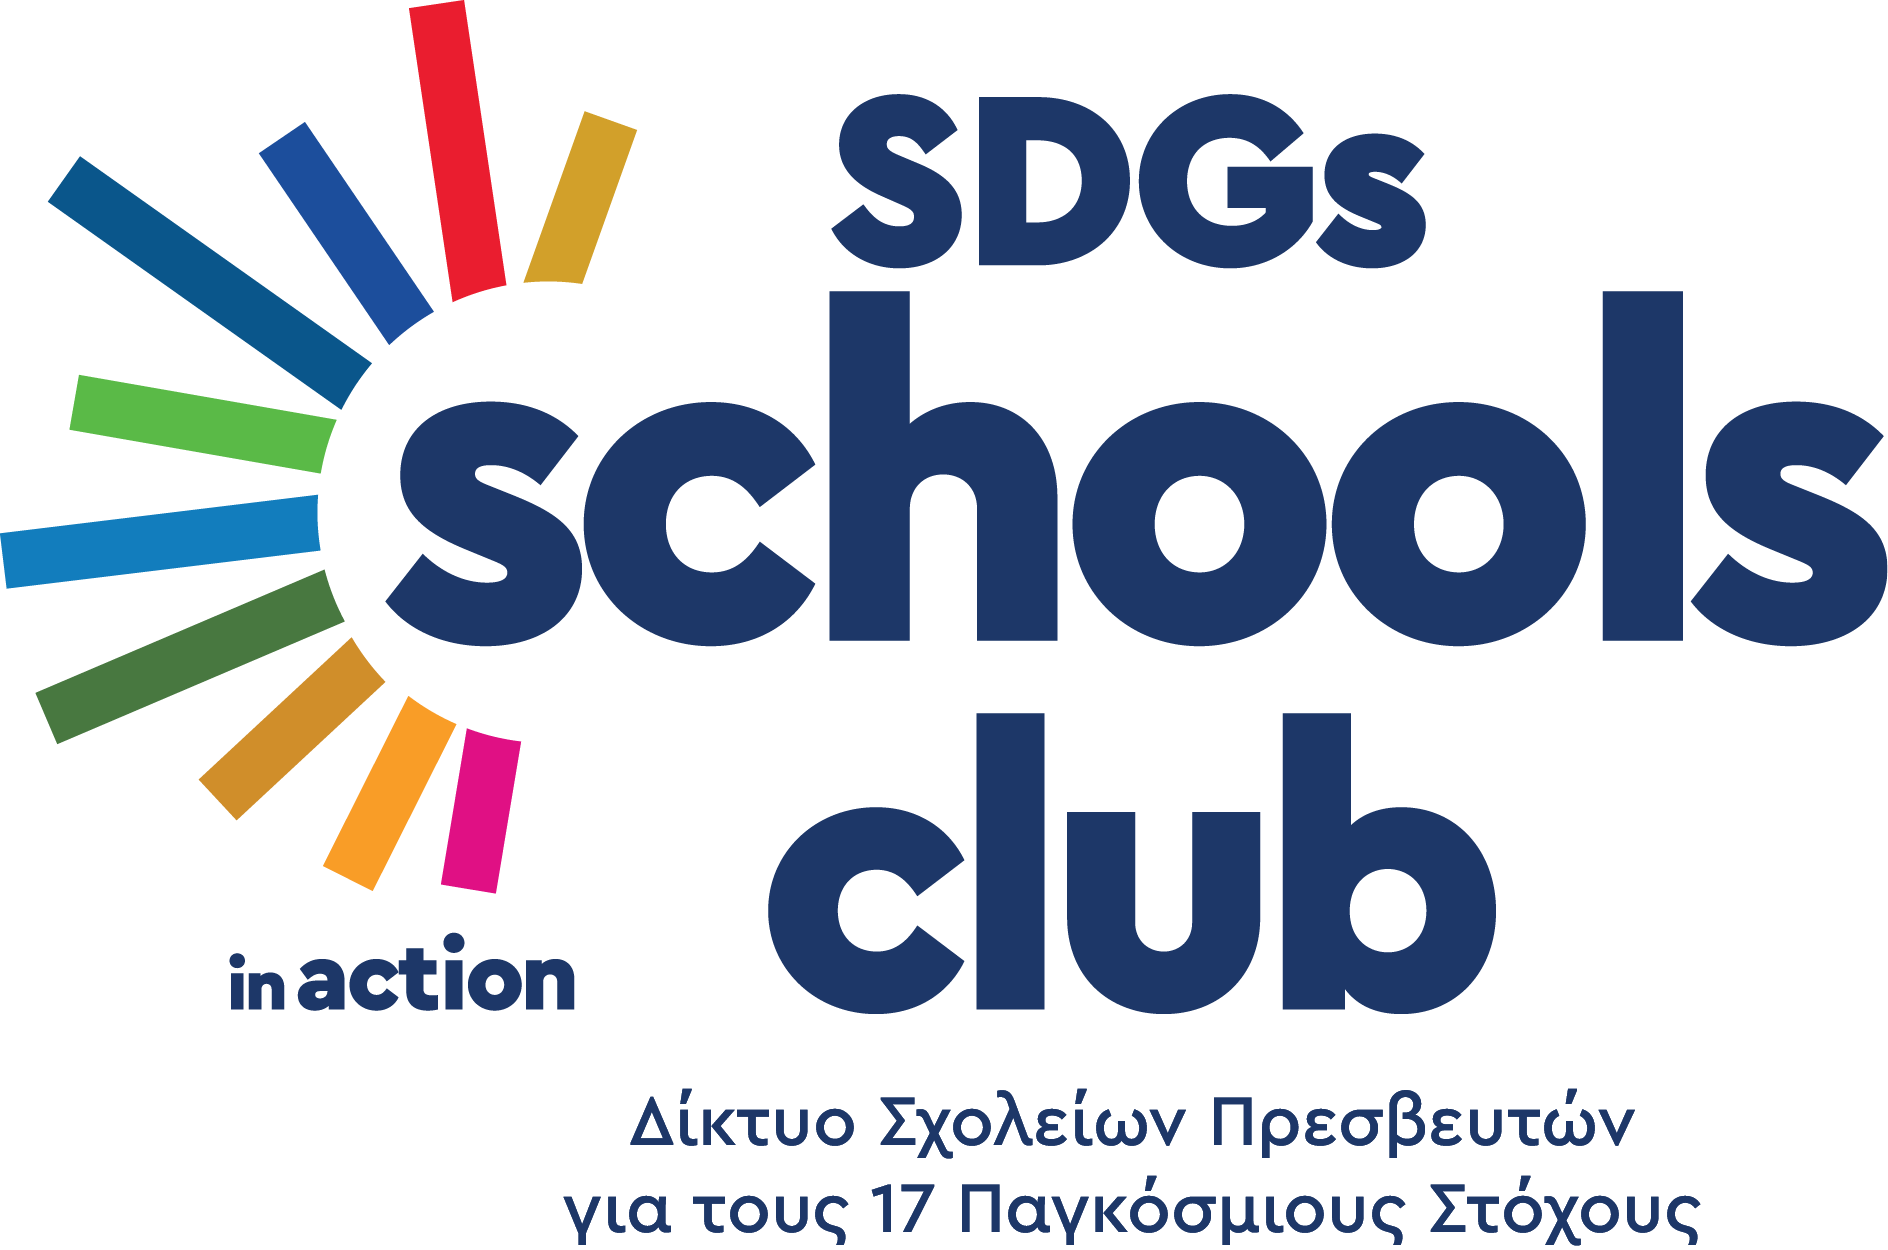 sdgs schools logo tagline bottom 1